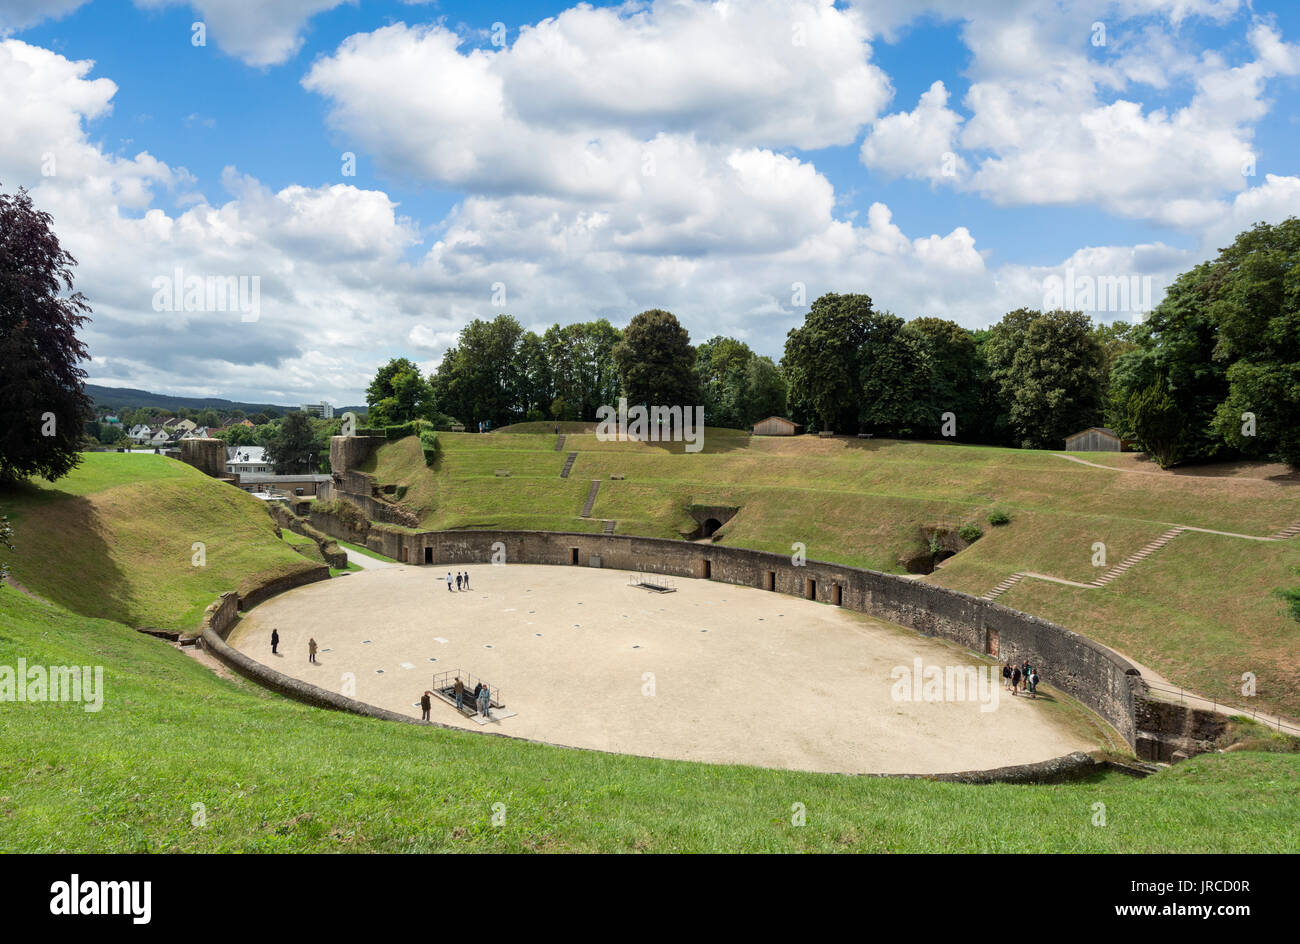 El anfiteatro romano en la ciudad de Trier, que data de alrededor de 100 AD, Renania-Palatinado, Alemania Foto de stock